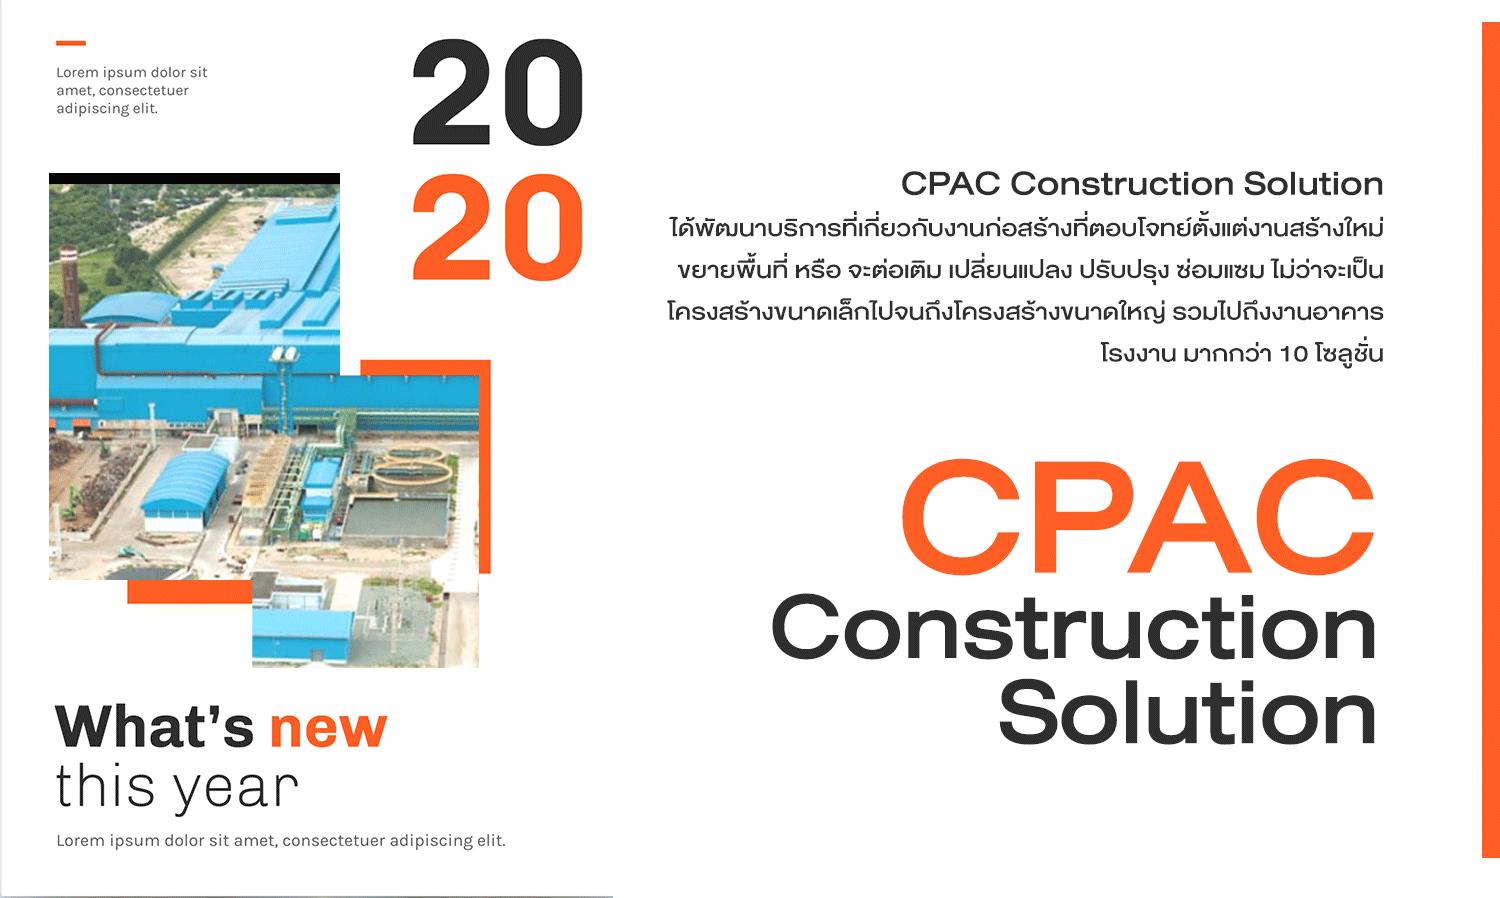 ต่อเติมโรงงาน ไม่ต้องปิดสายการผลิต จะควบคุมคุณภาพ กำหนดวันเสร็จอย่างไร CPAC Construction Solution มีคำตอบ